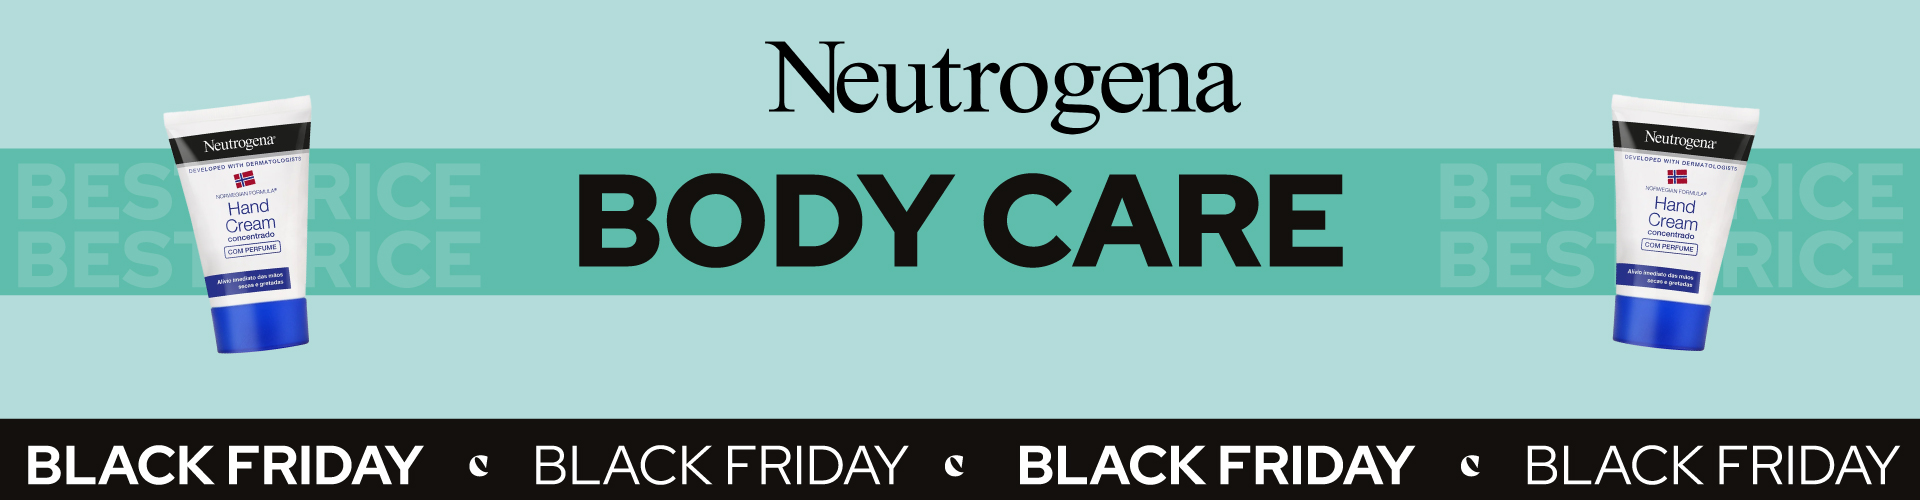 Neutrogena Body Care